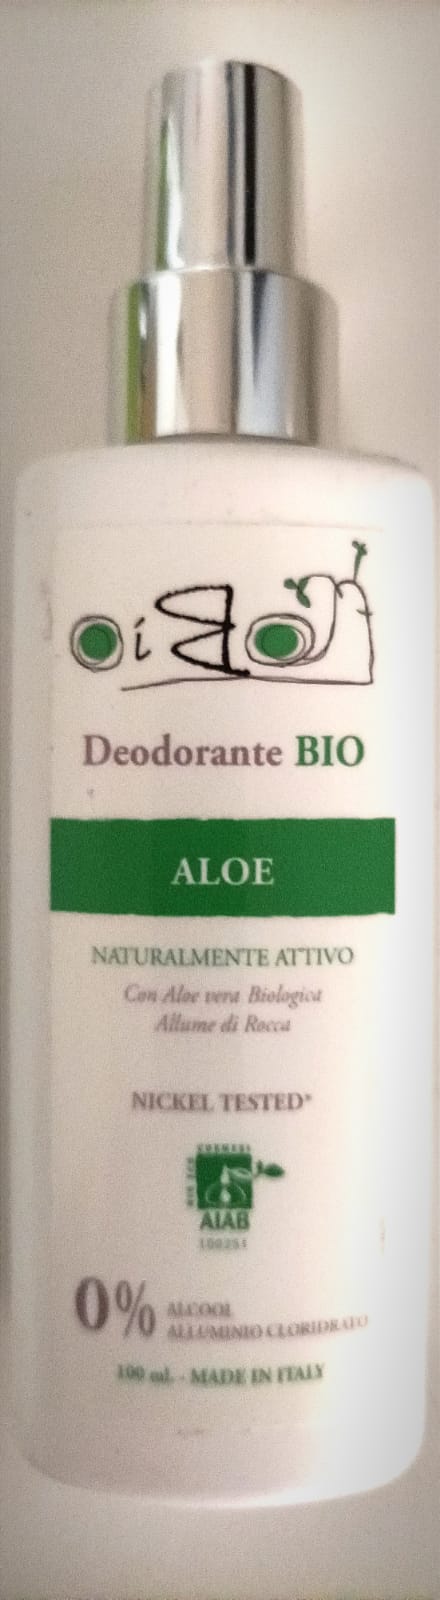 oibo-bio-profumeria_deodorante-spray_aloe_oibo_zeca_labnat